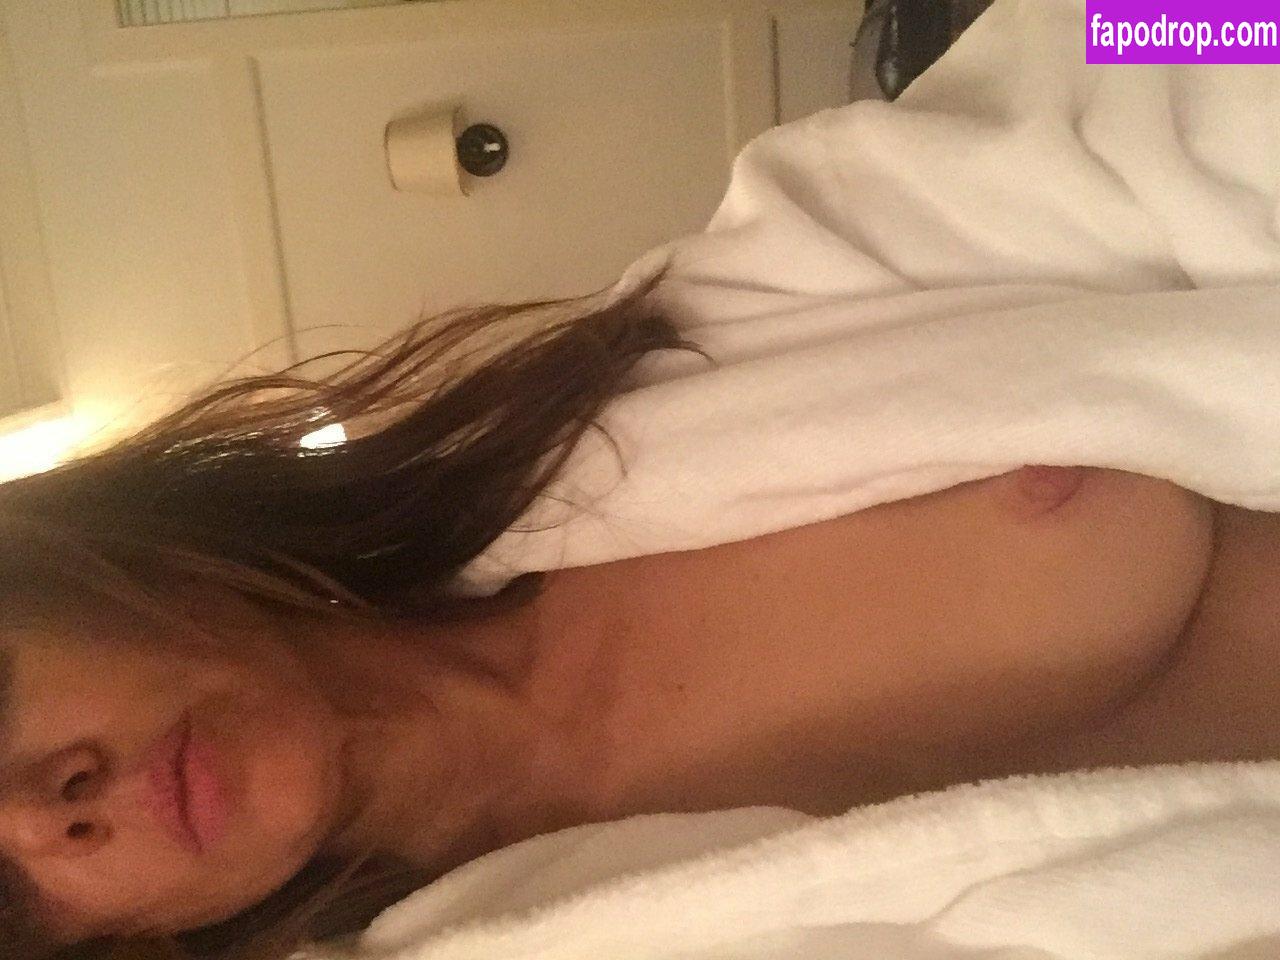 Natasha Leggero / natashaleggero leak of nude photo #0039 from OnlyFans or Patreon